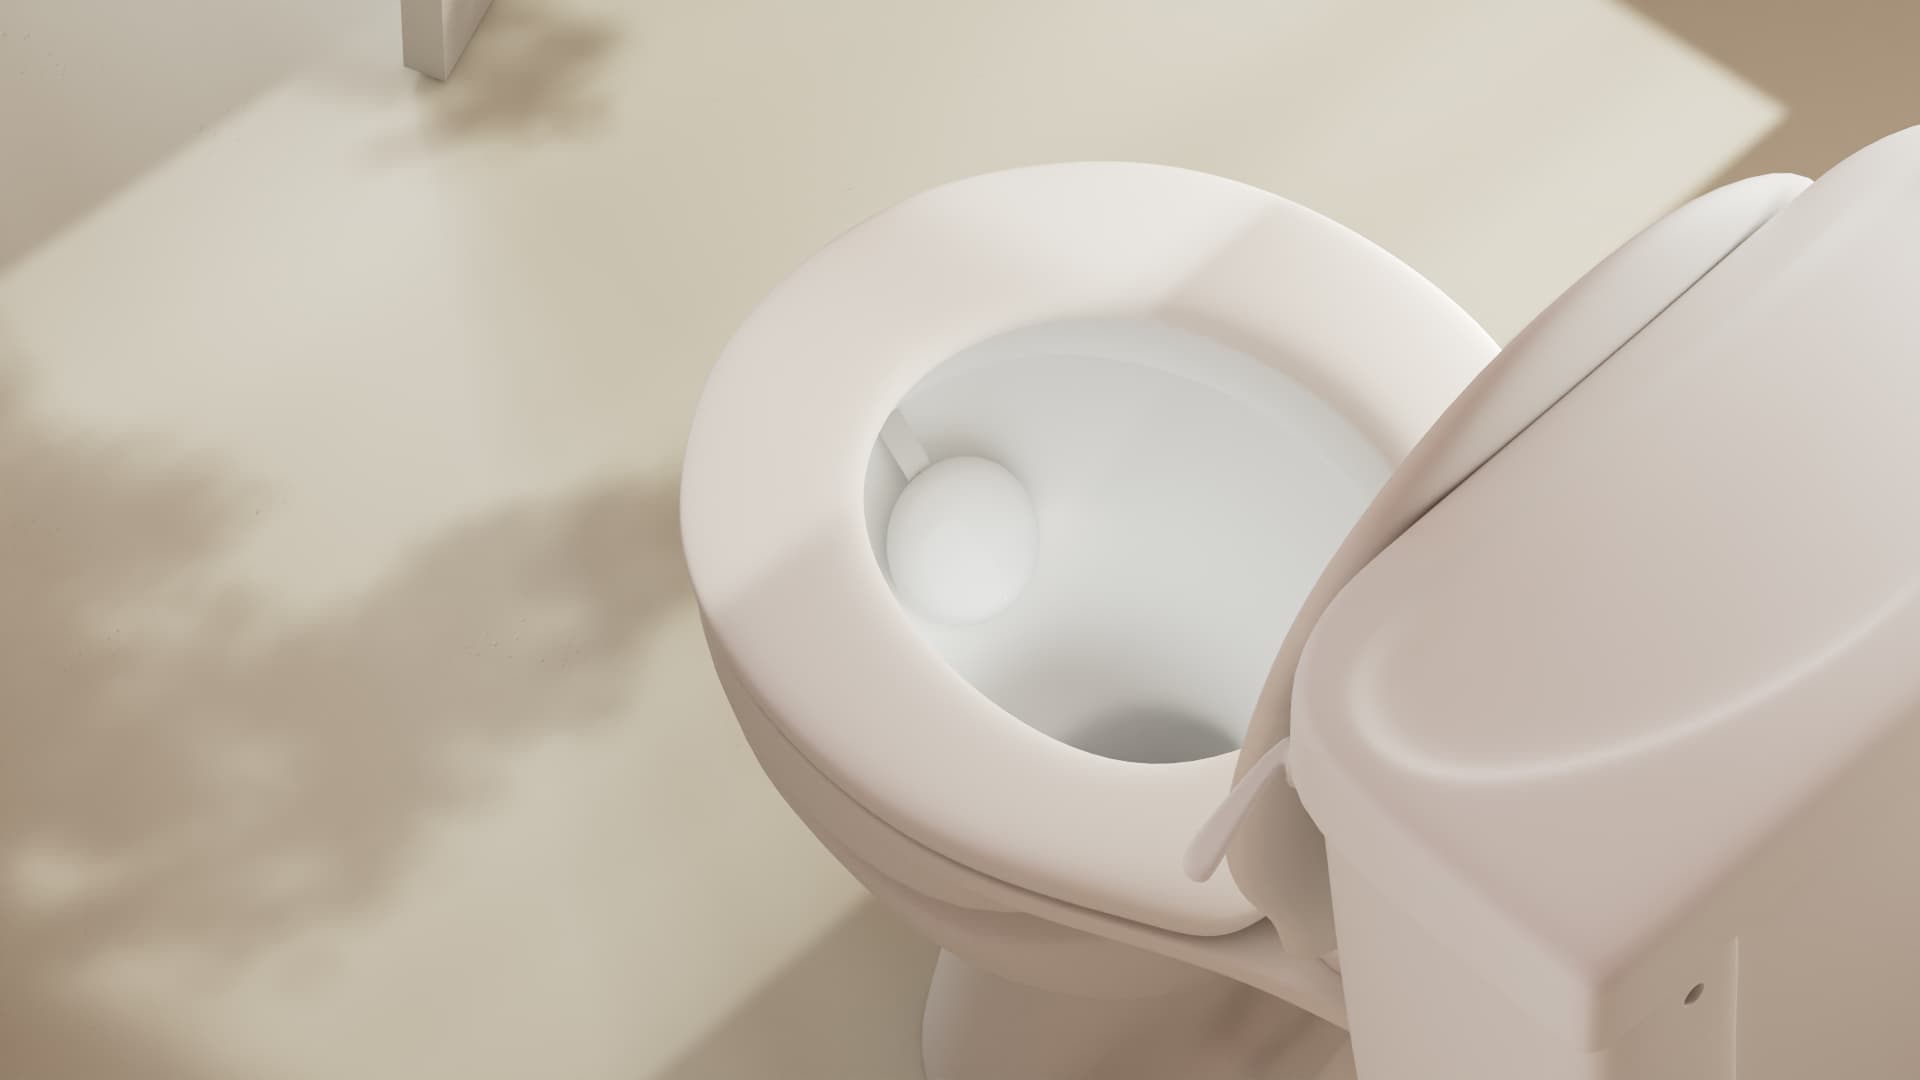 Toilettes et dispositifs urinaires mobiles